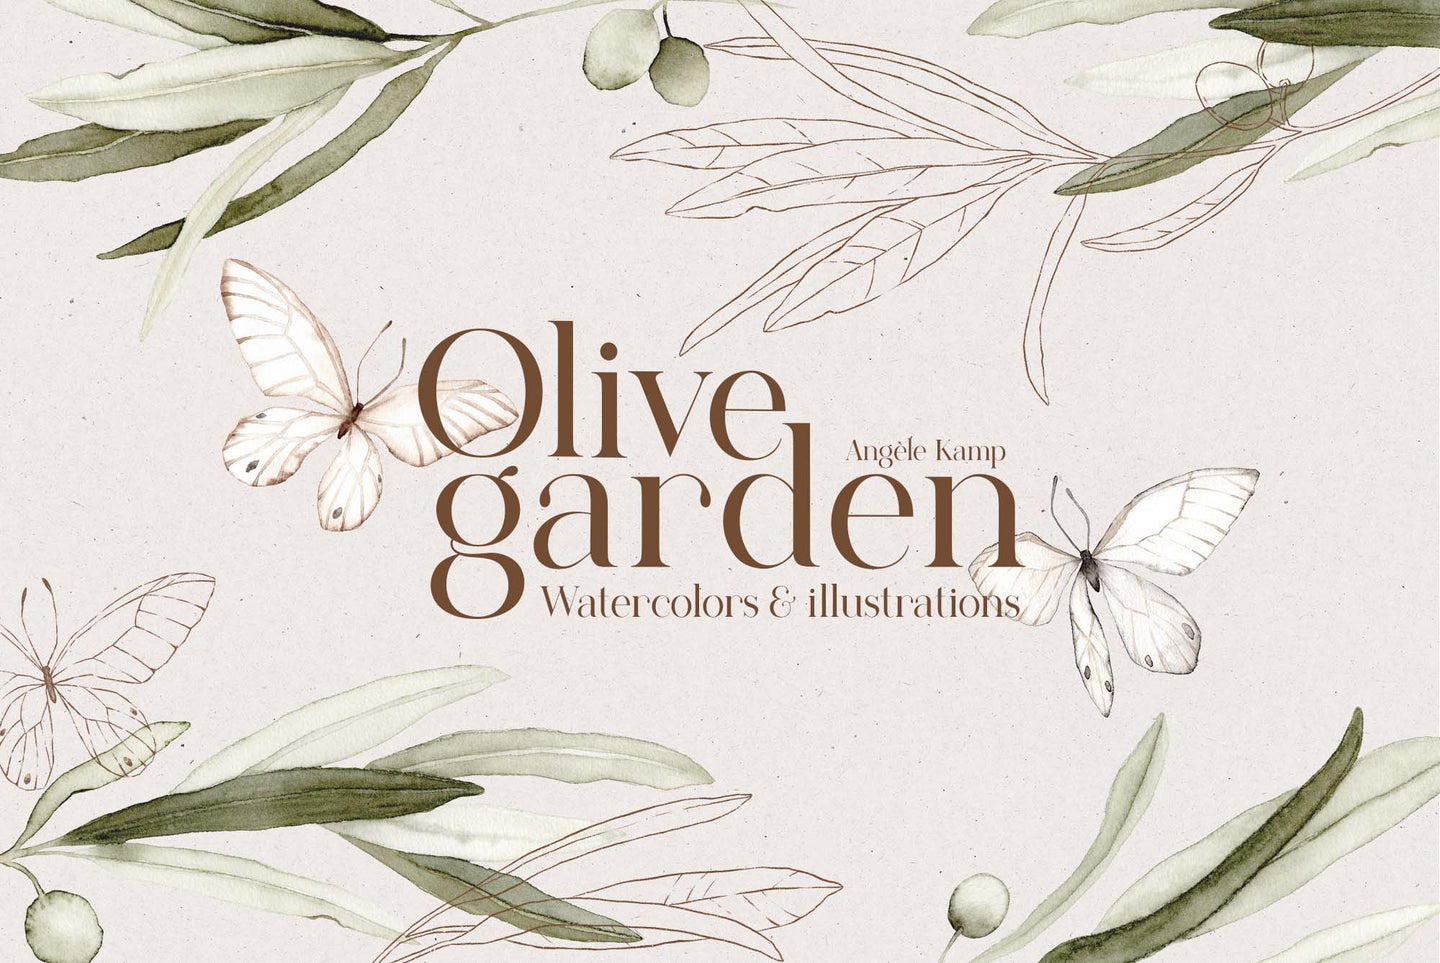 Olive garden watercolors